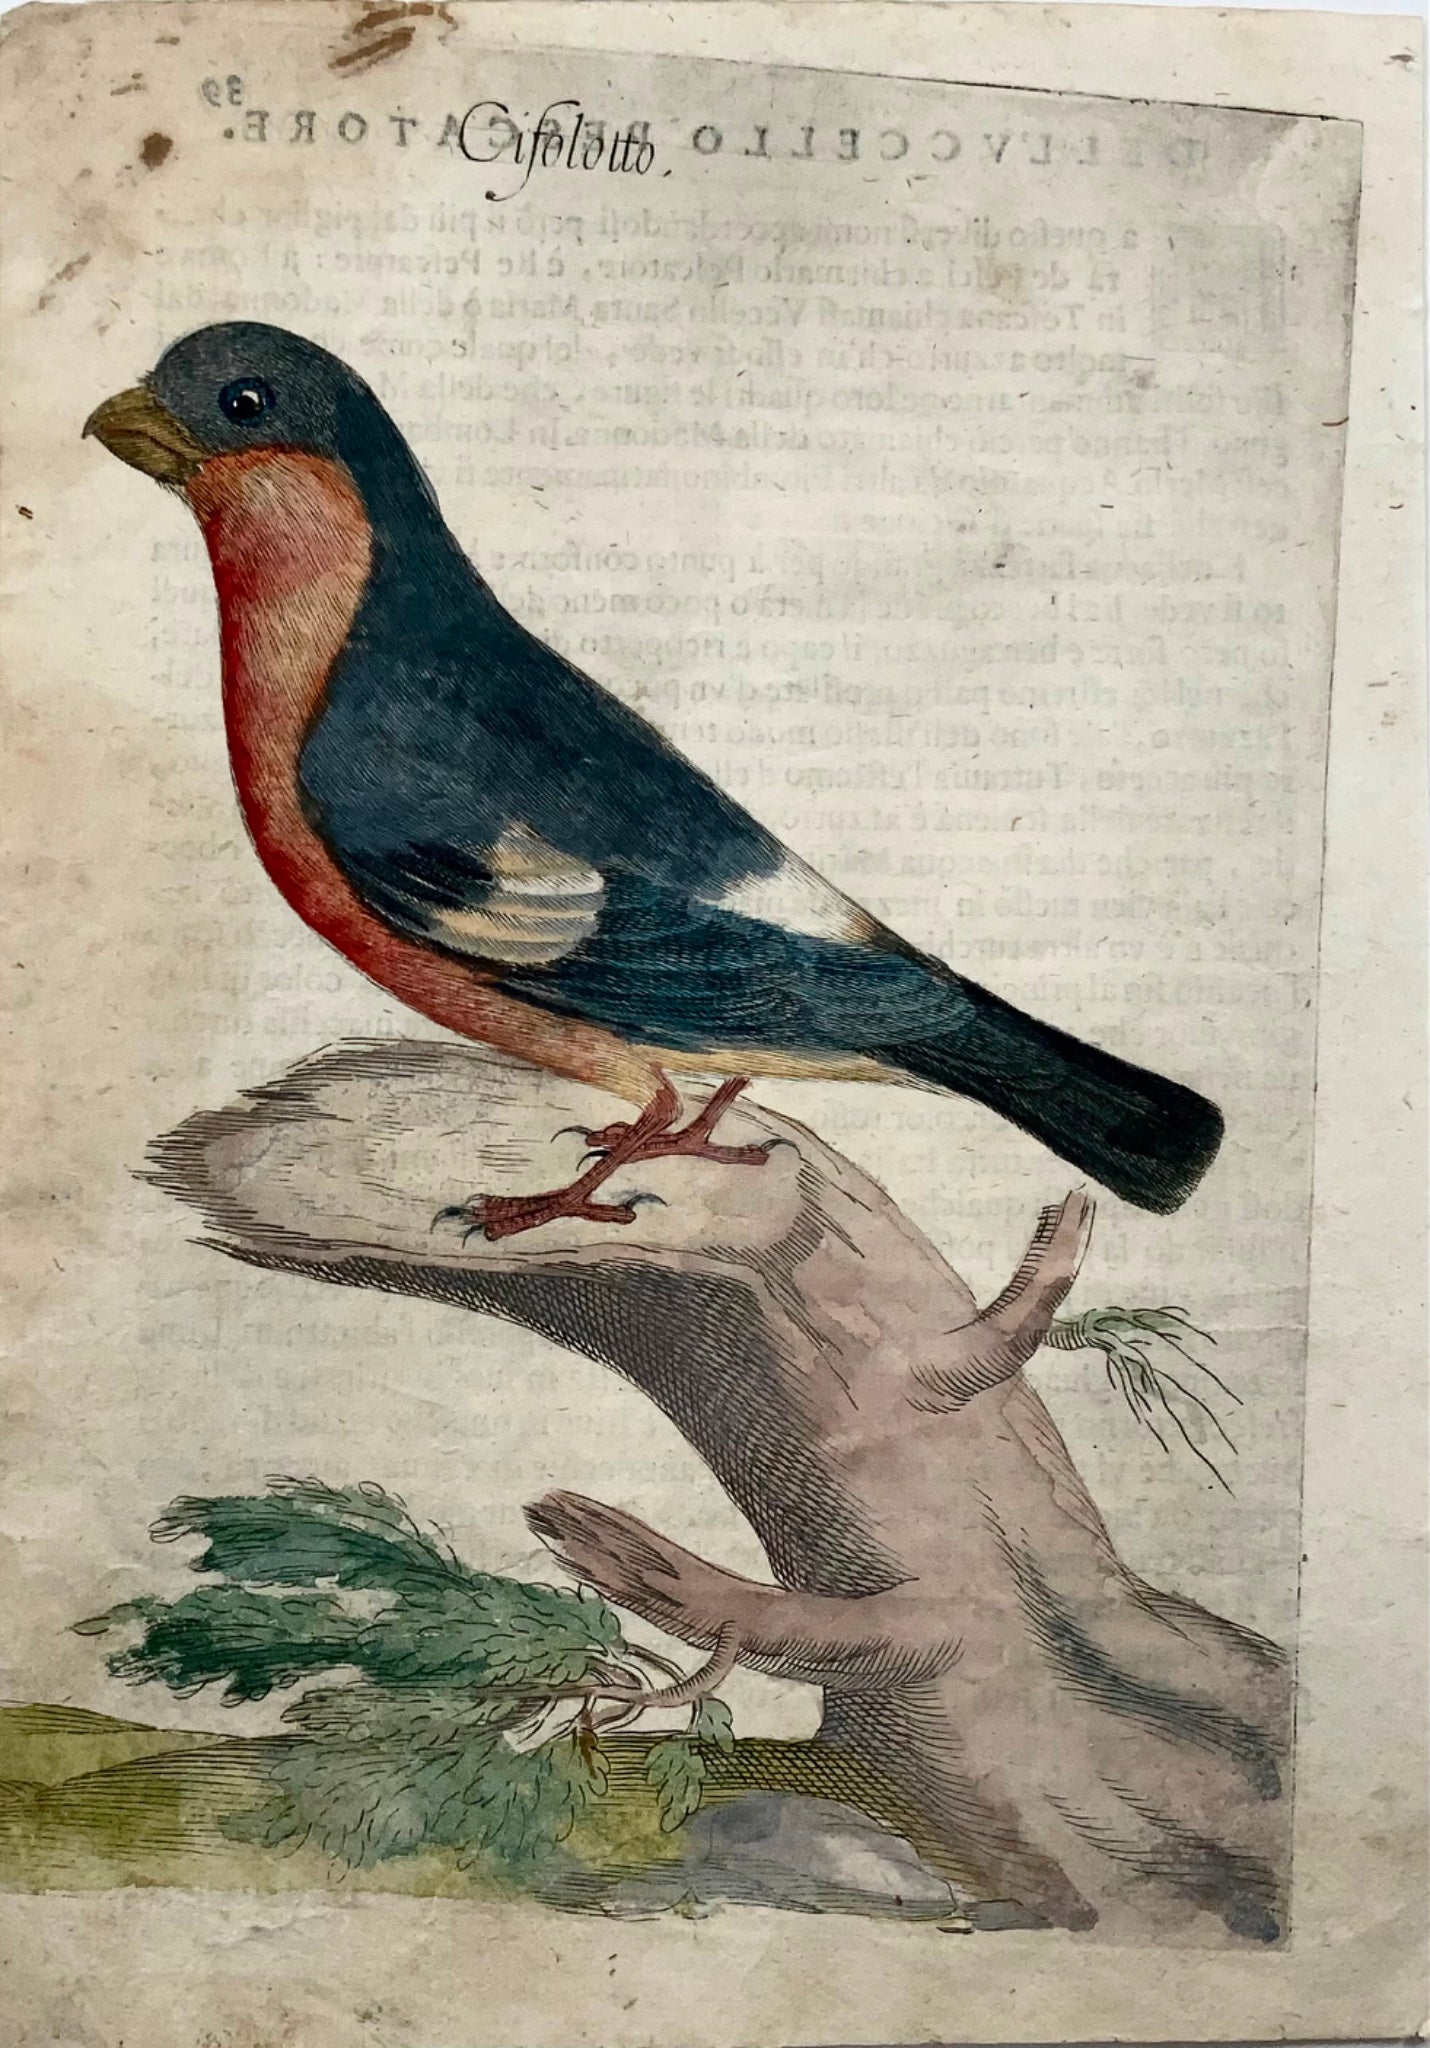 1622 Ciuffolotto, Ornitologia, Ant. Tempesta; F. Villamena, Maestro dell'incisione 